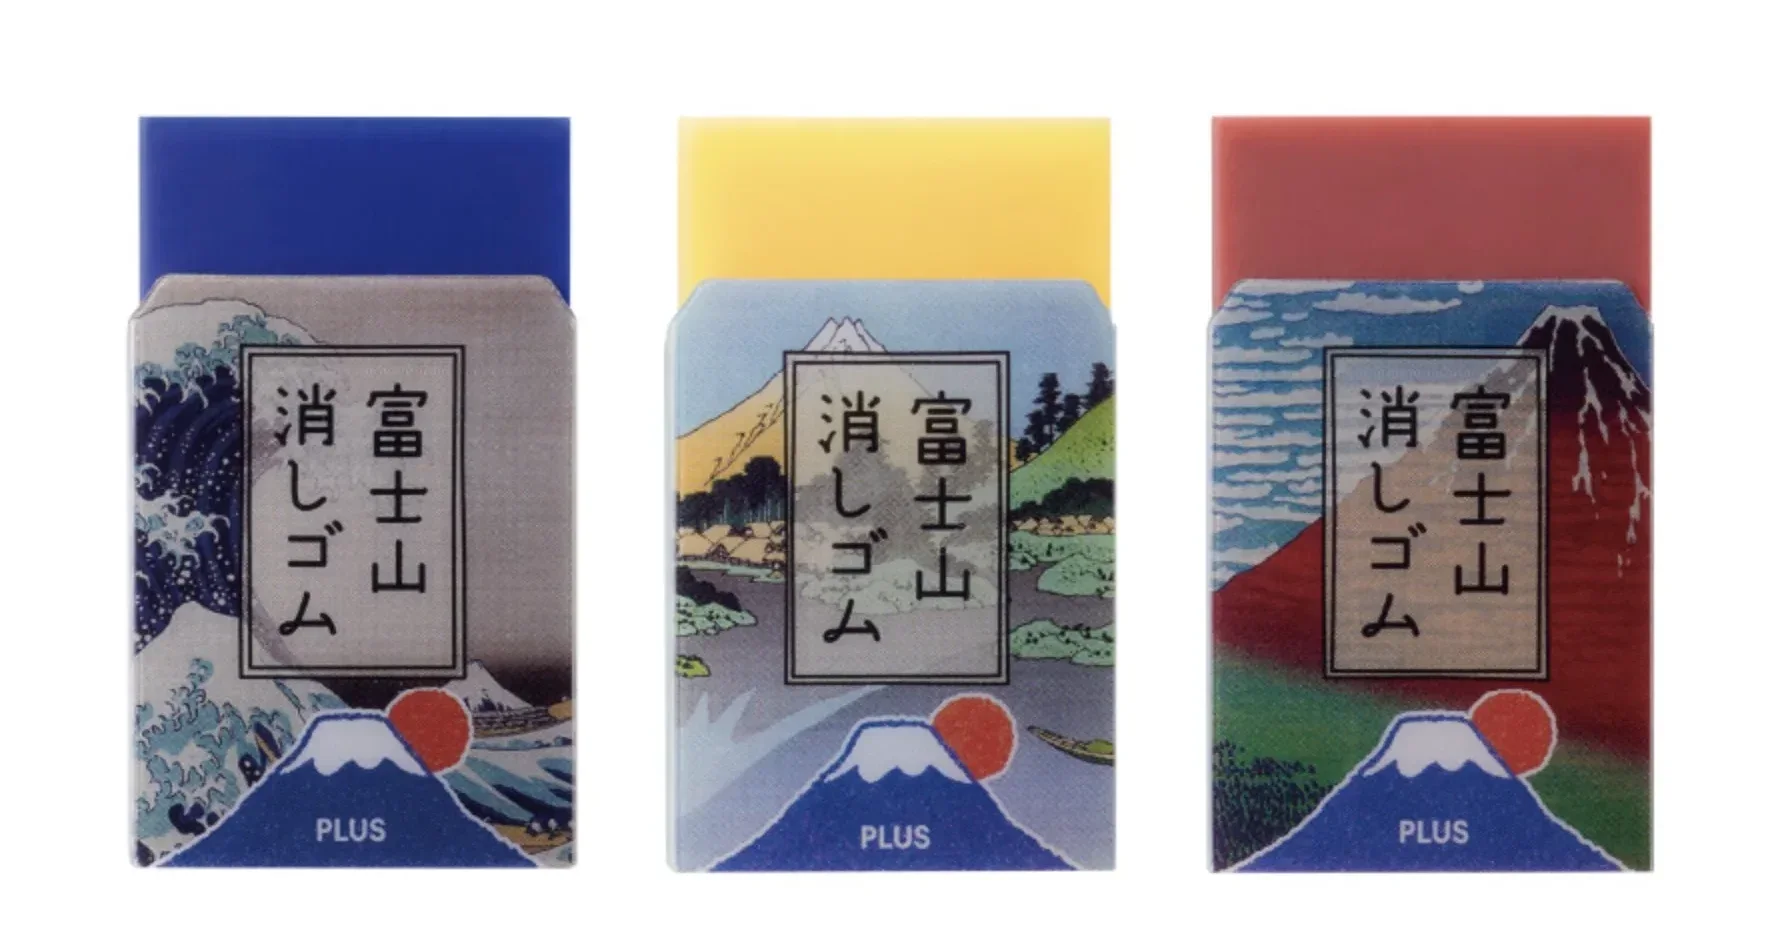 ยางลบฟูจิซัง วิวภูเขาไฟฟูจิ mount fuji eraser